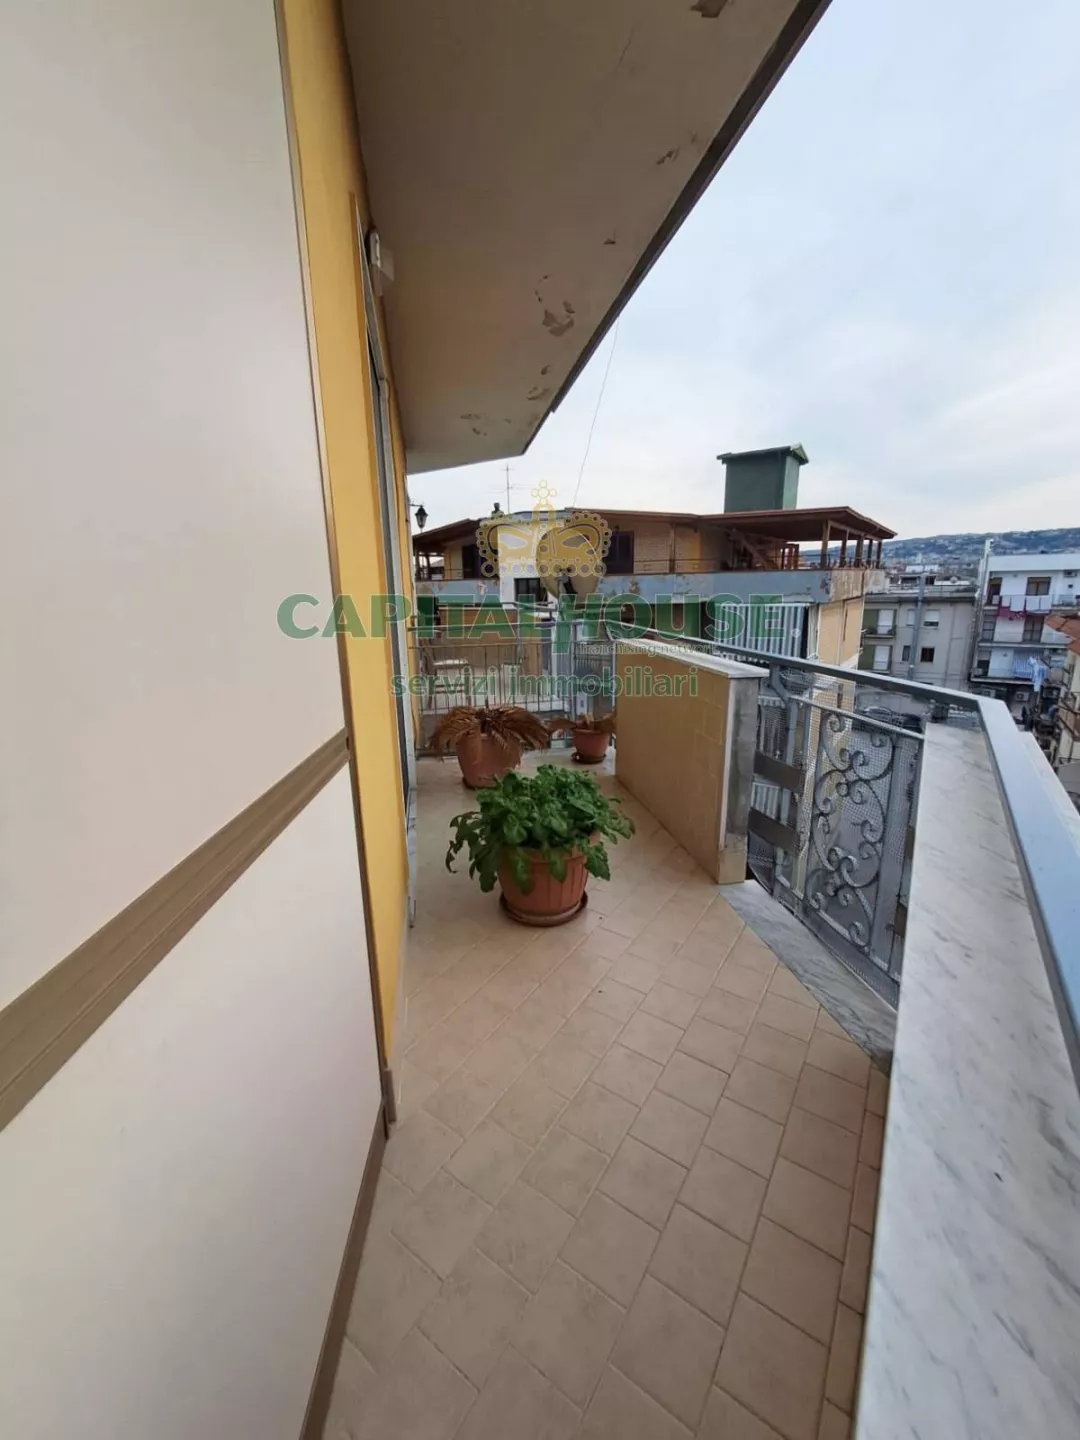 Immagine per Appartamento in vendita a Villaricca